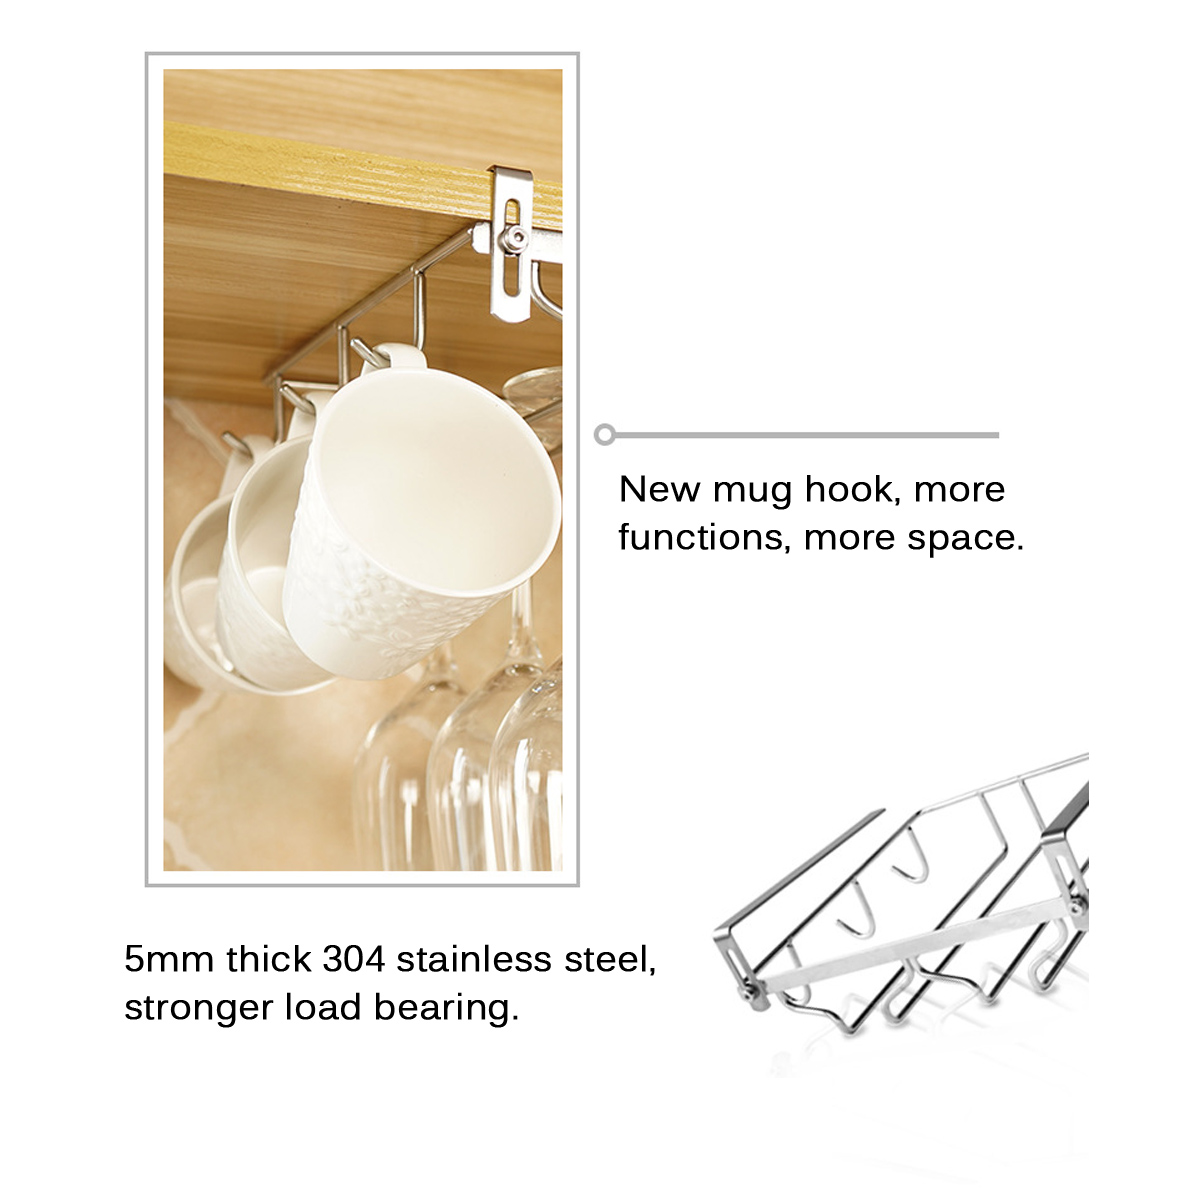 Mug-Holder-Coffee-Tea-Cup-Rack-Storage-Kitchen-Under-Shelf-Cabinet-Hanger-1780359-5